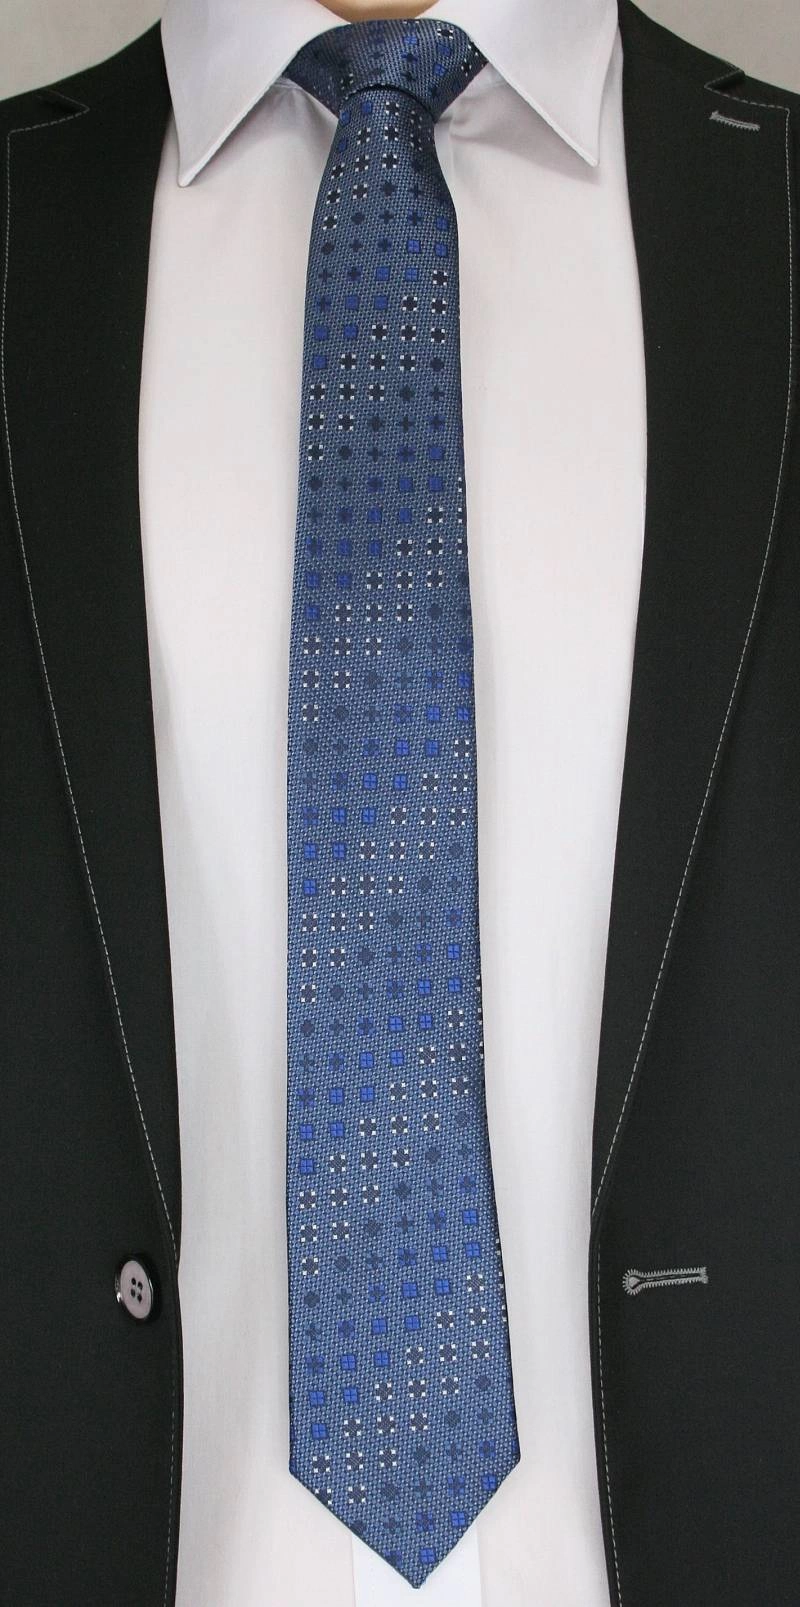 Stylowy Krawat Męski - Motyw Geometryczny - Chattier - 6,5 cm, Ciemny Niebieski